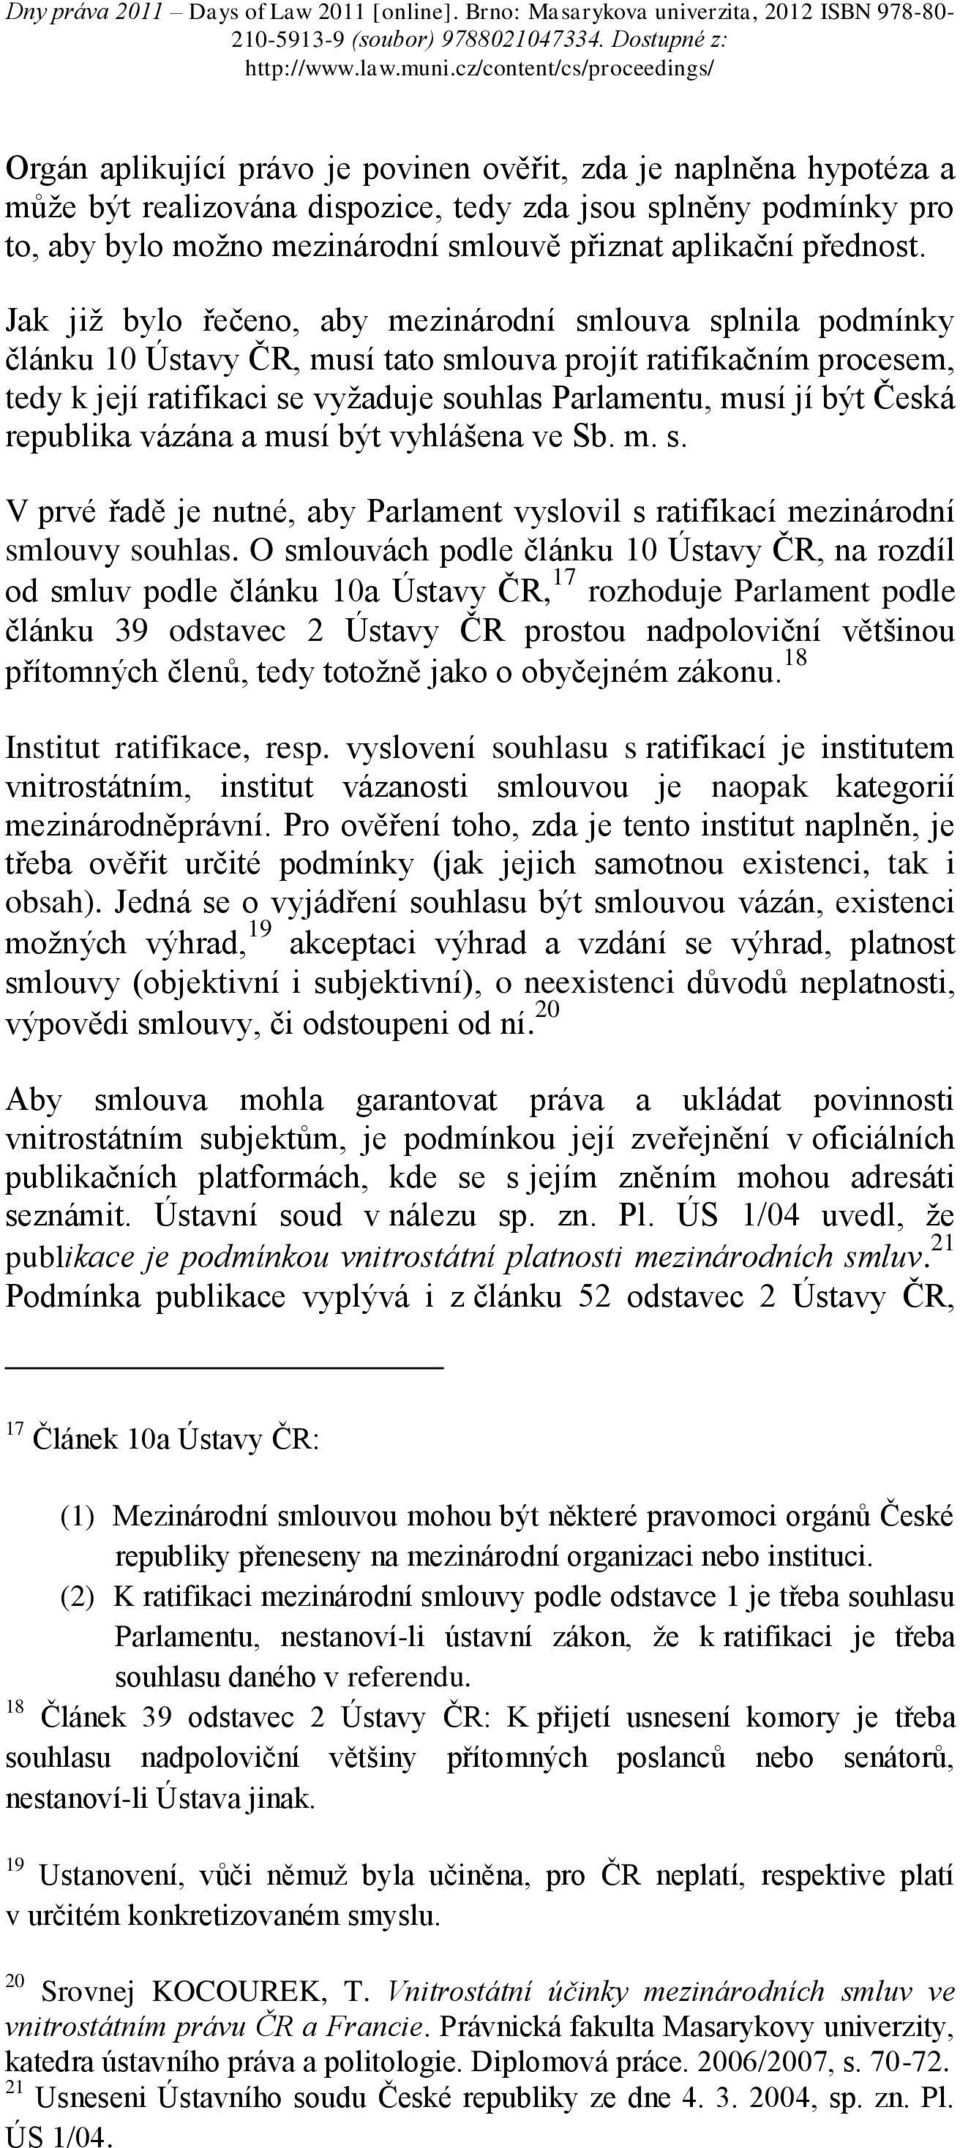 Jak již bylo řečeno, aby mezinárodní smlouva splnila podmínky článku 10 Ústavy ČR, musí tato smlouva projít ratifikačním procesem, tedy k její ratifikaci se vyžaduje souhlas Parlamentu, musí jí být